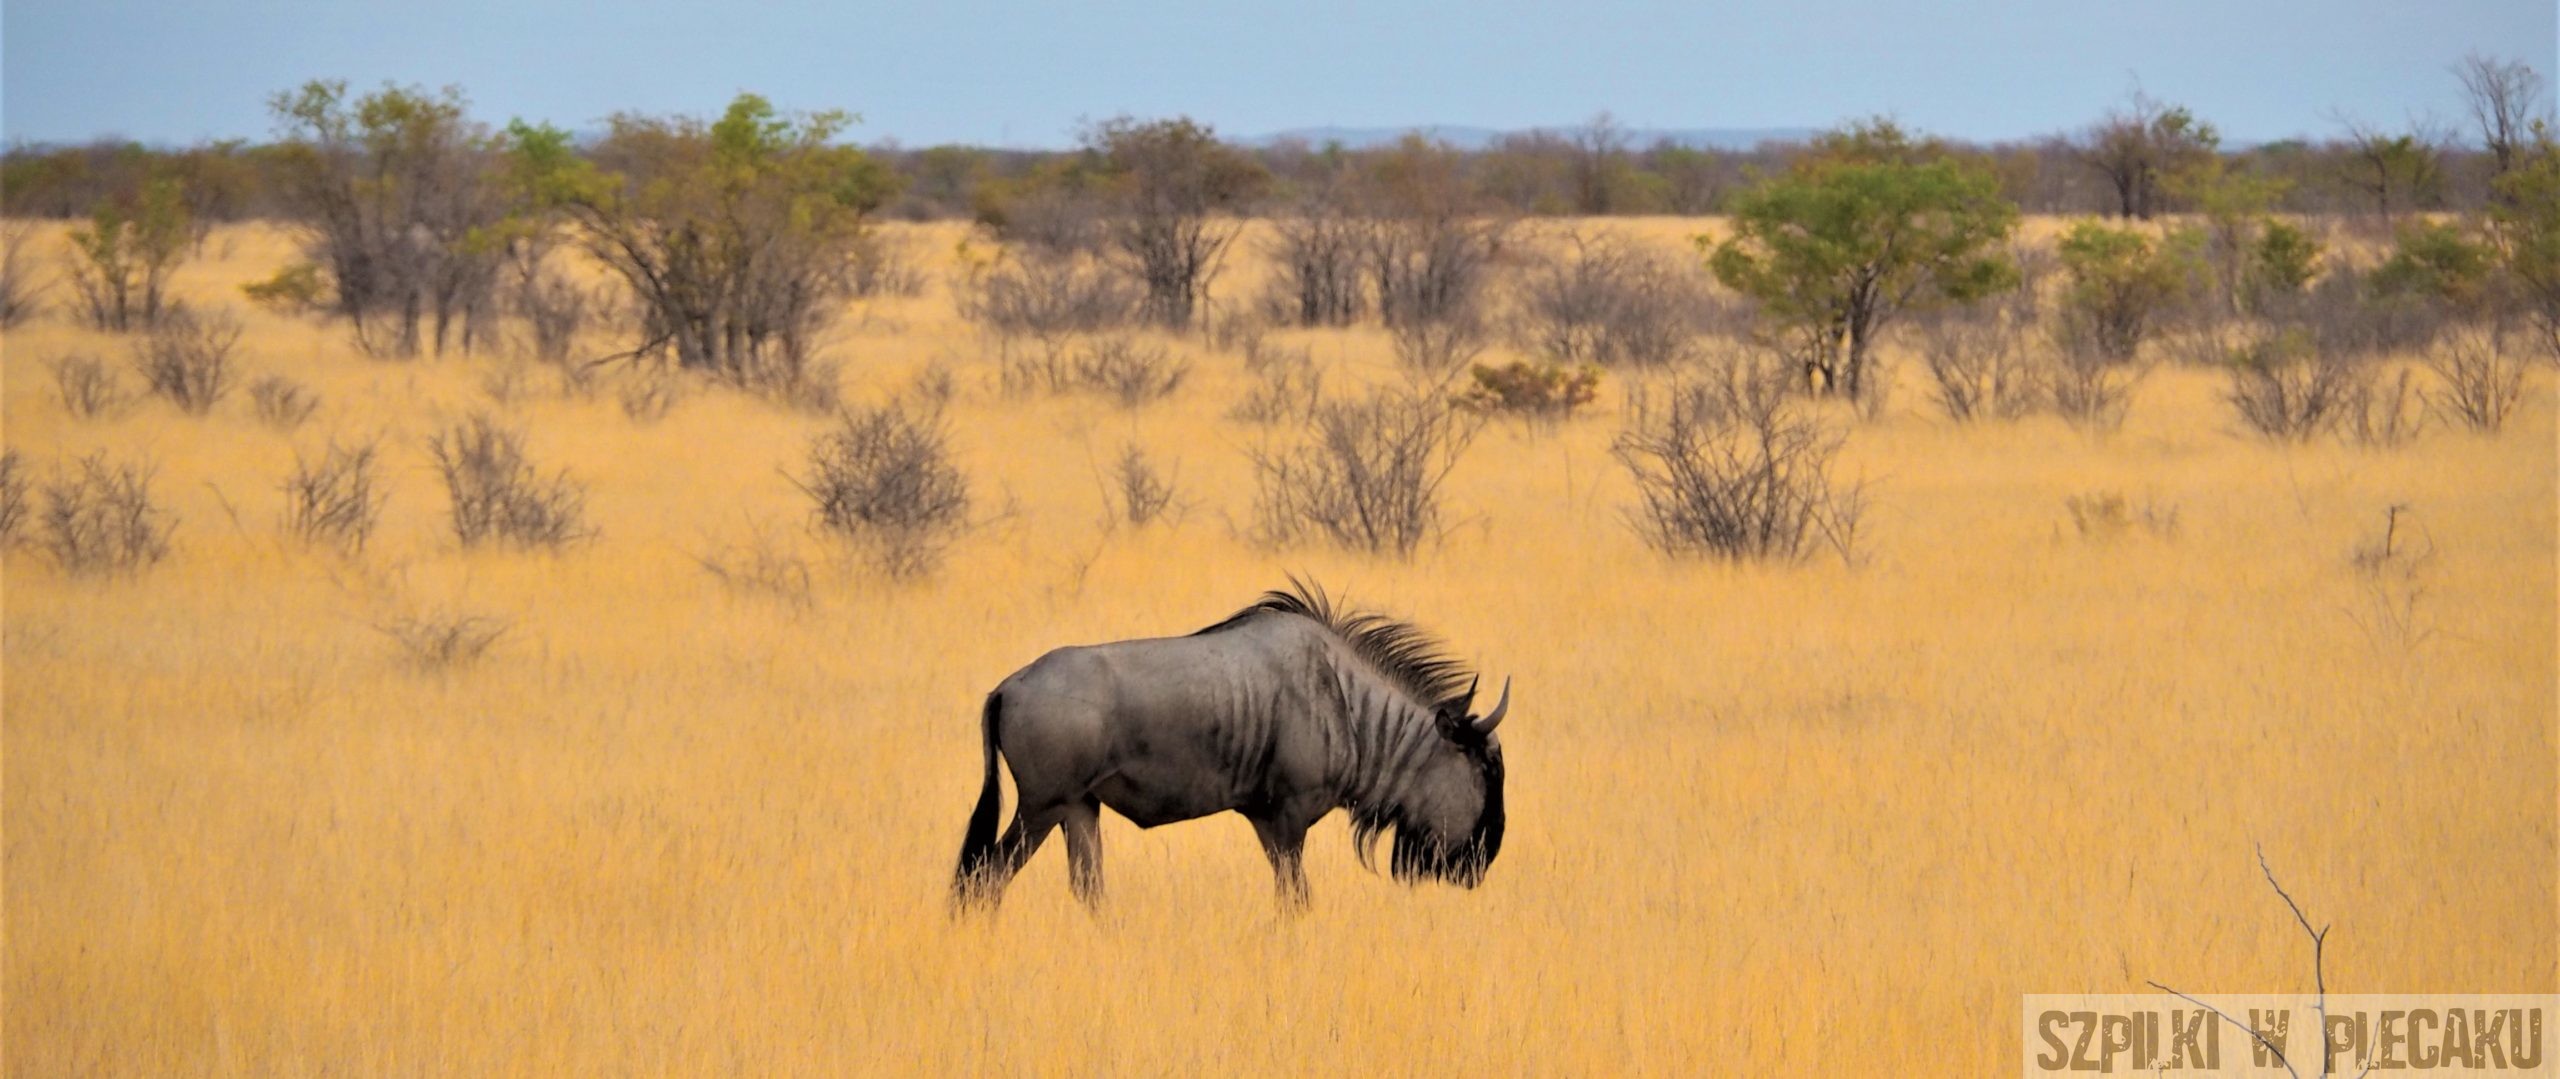 Zwierzęta na safari – to powie Ci tylko przewodnik! Ciekawostki o zwierzętach z parków narodowych Afryki